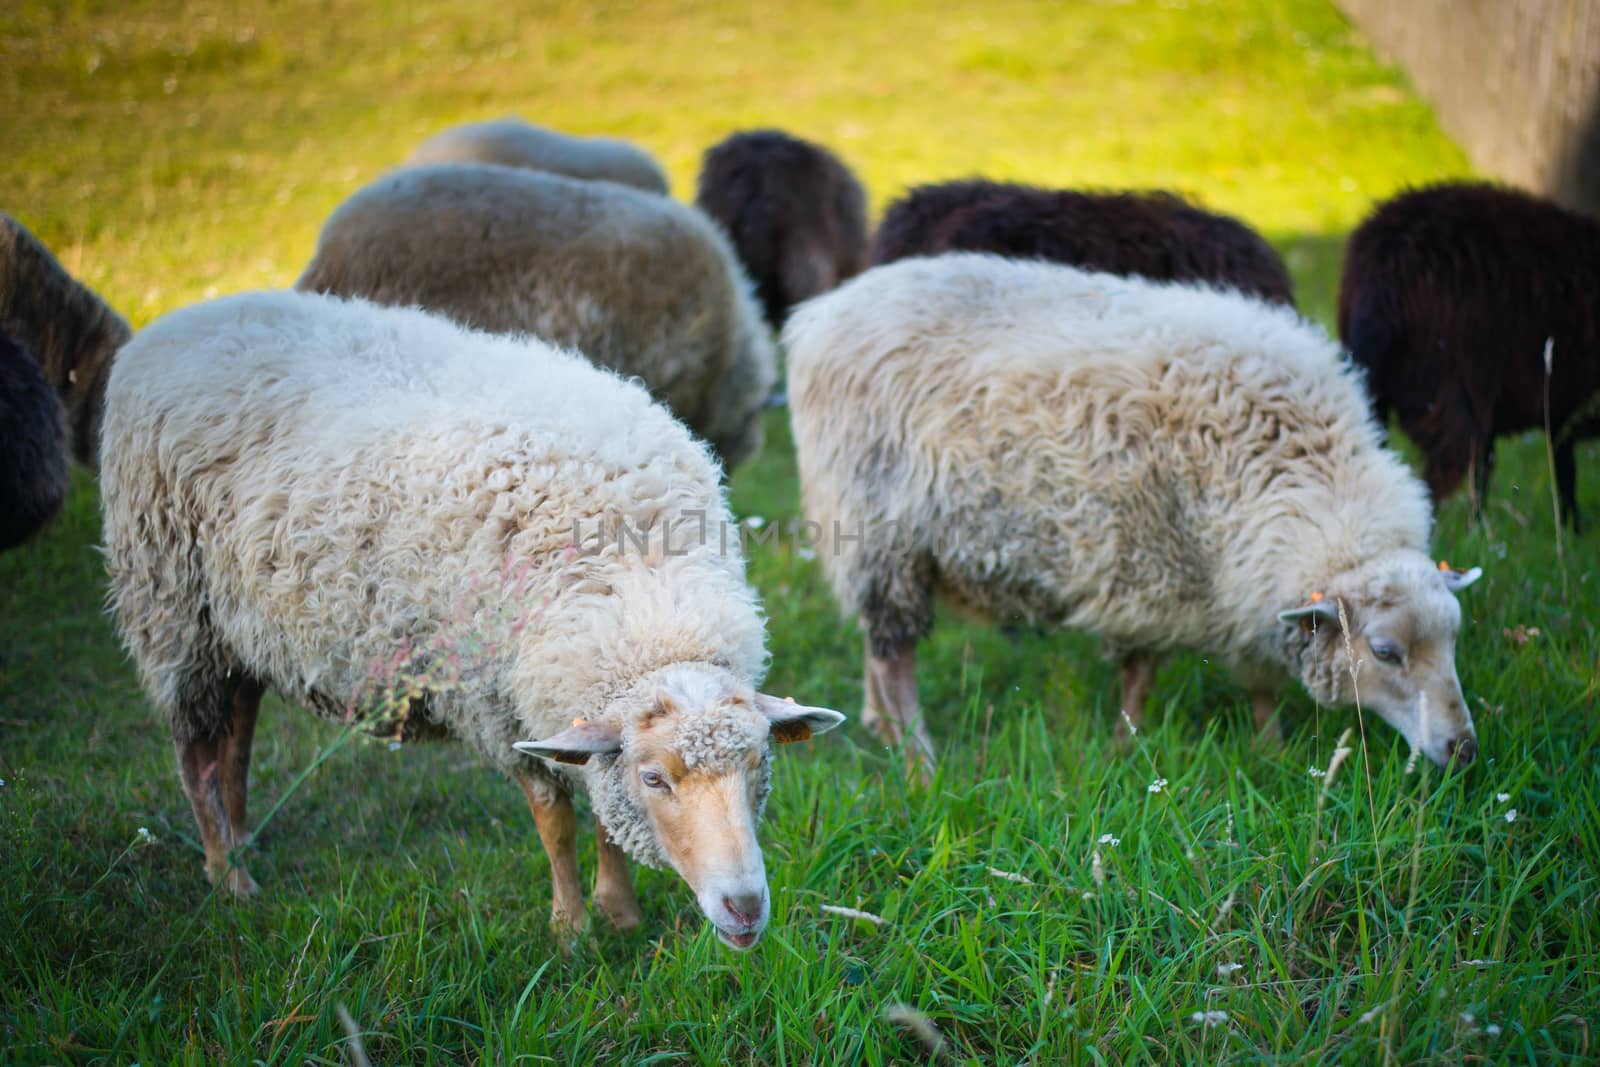 Herd of sheeps by furzyk73